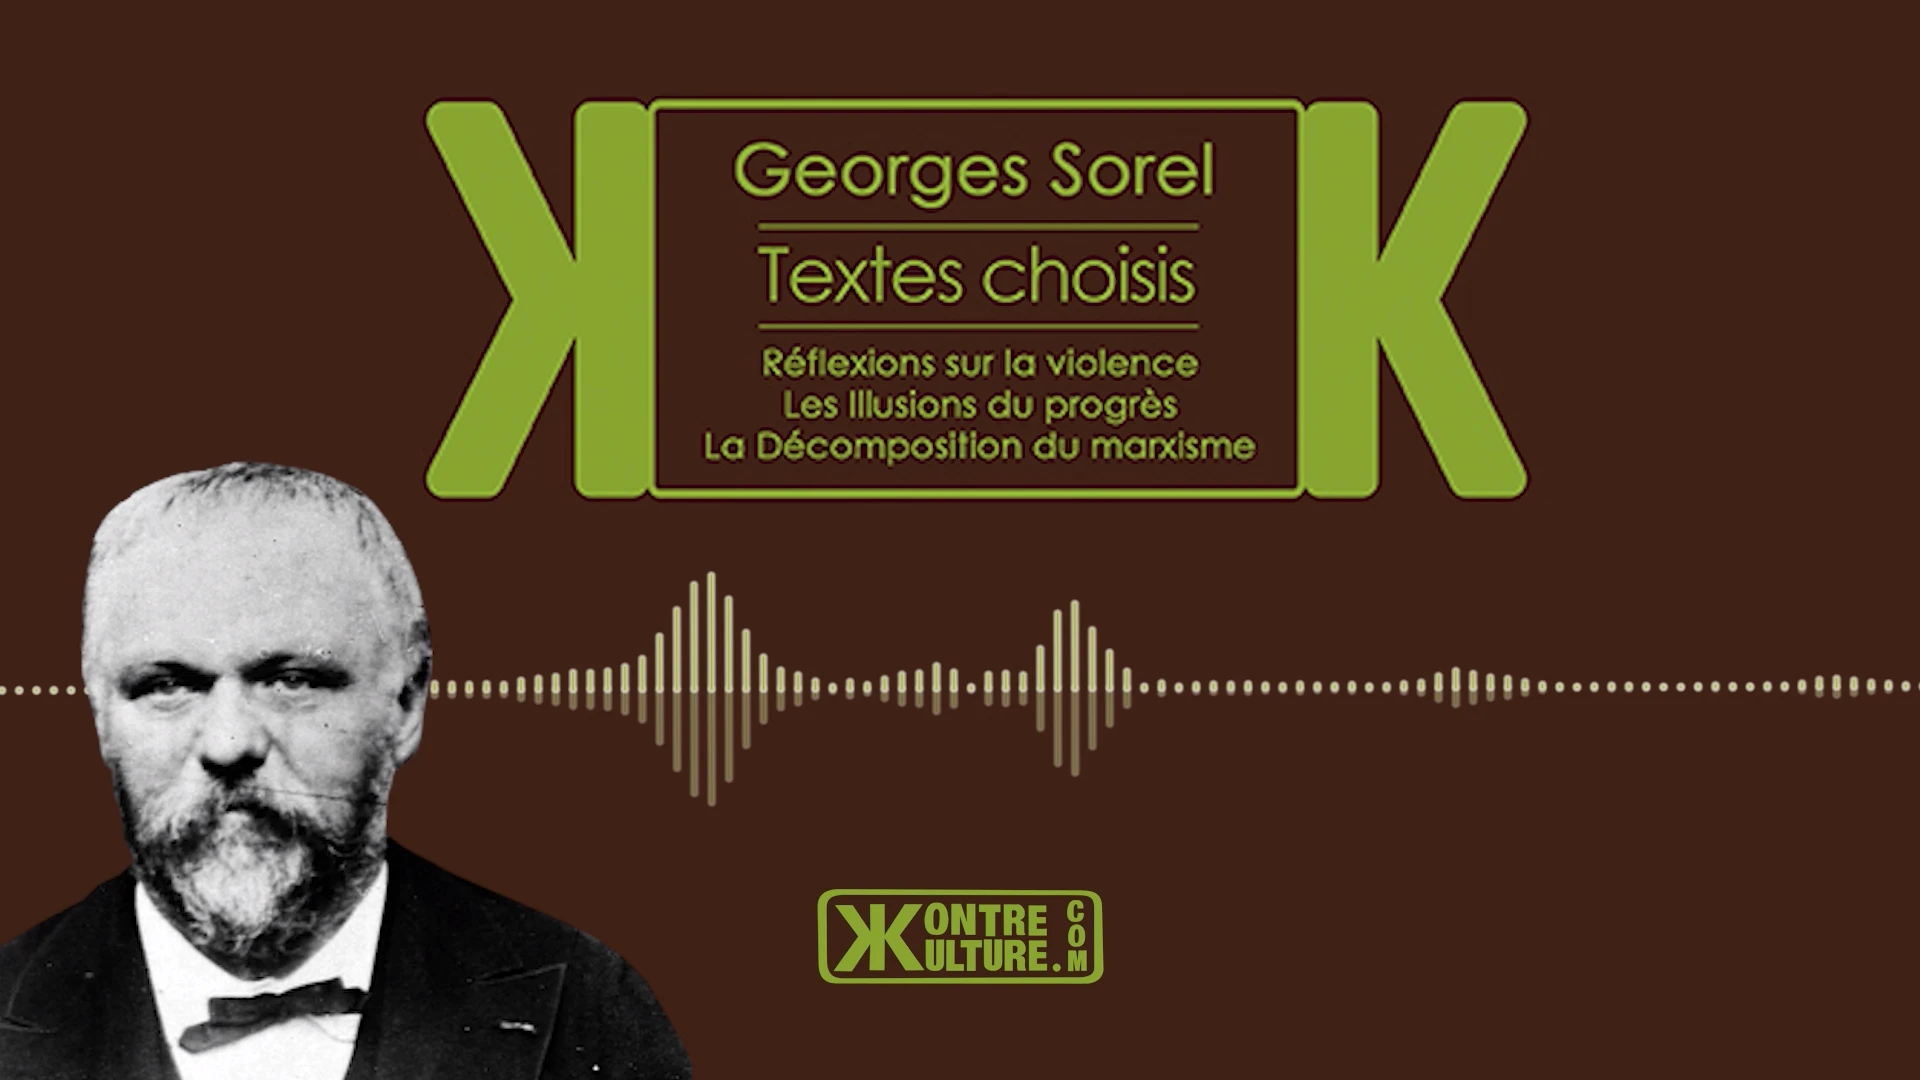 Brice et Kontre Kulture présente Réflexions sur la violence et autres textes de Georges Sorel